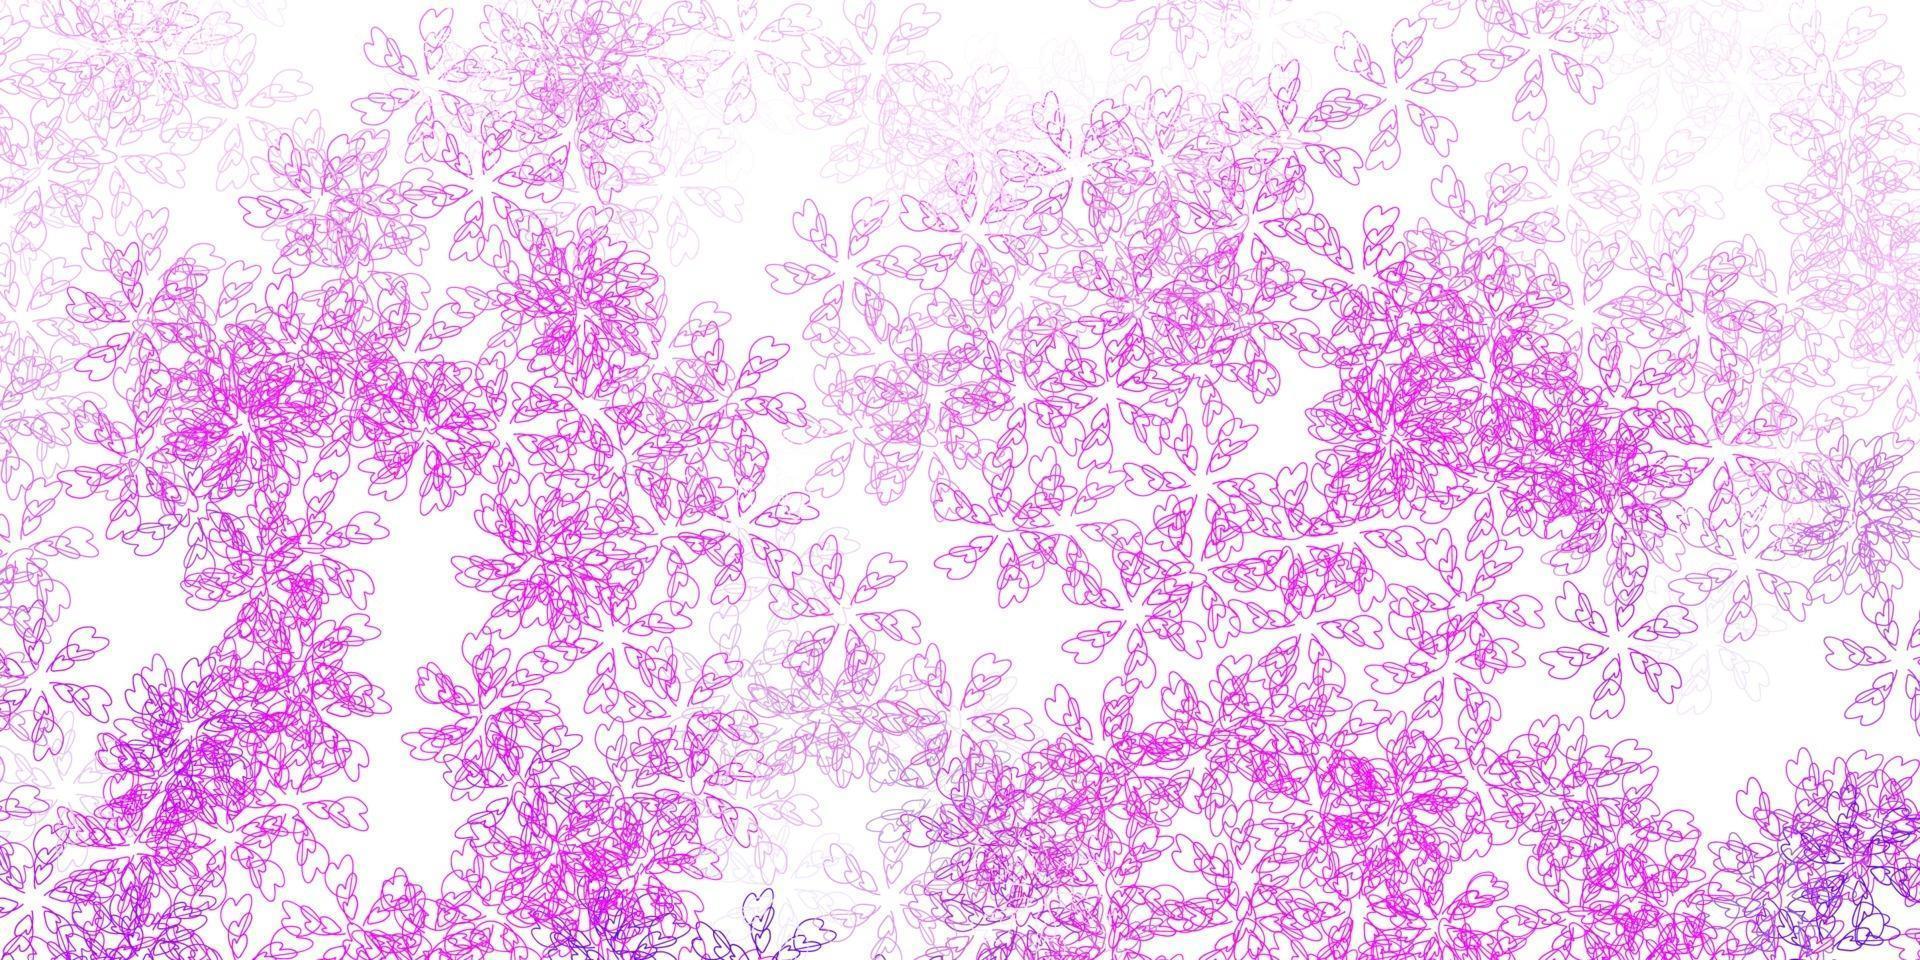 modelo abstrato de vetor roxo, rosa claro com folhas.